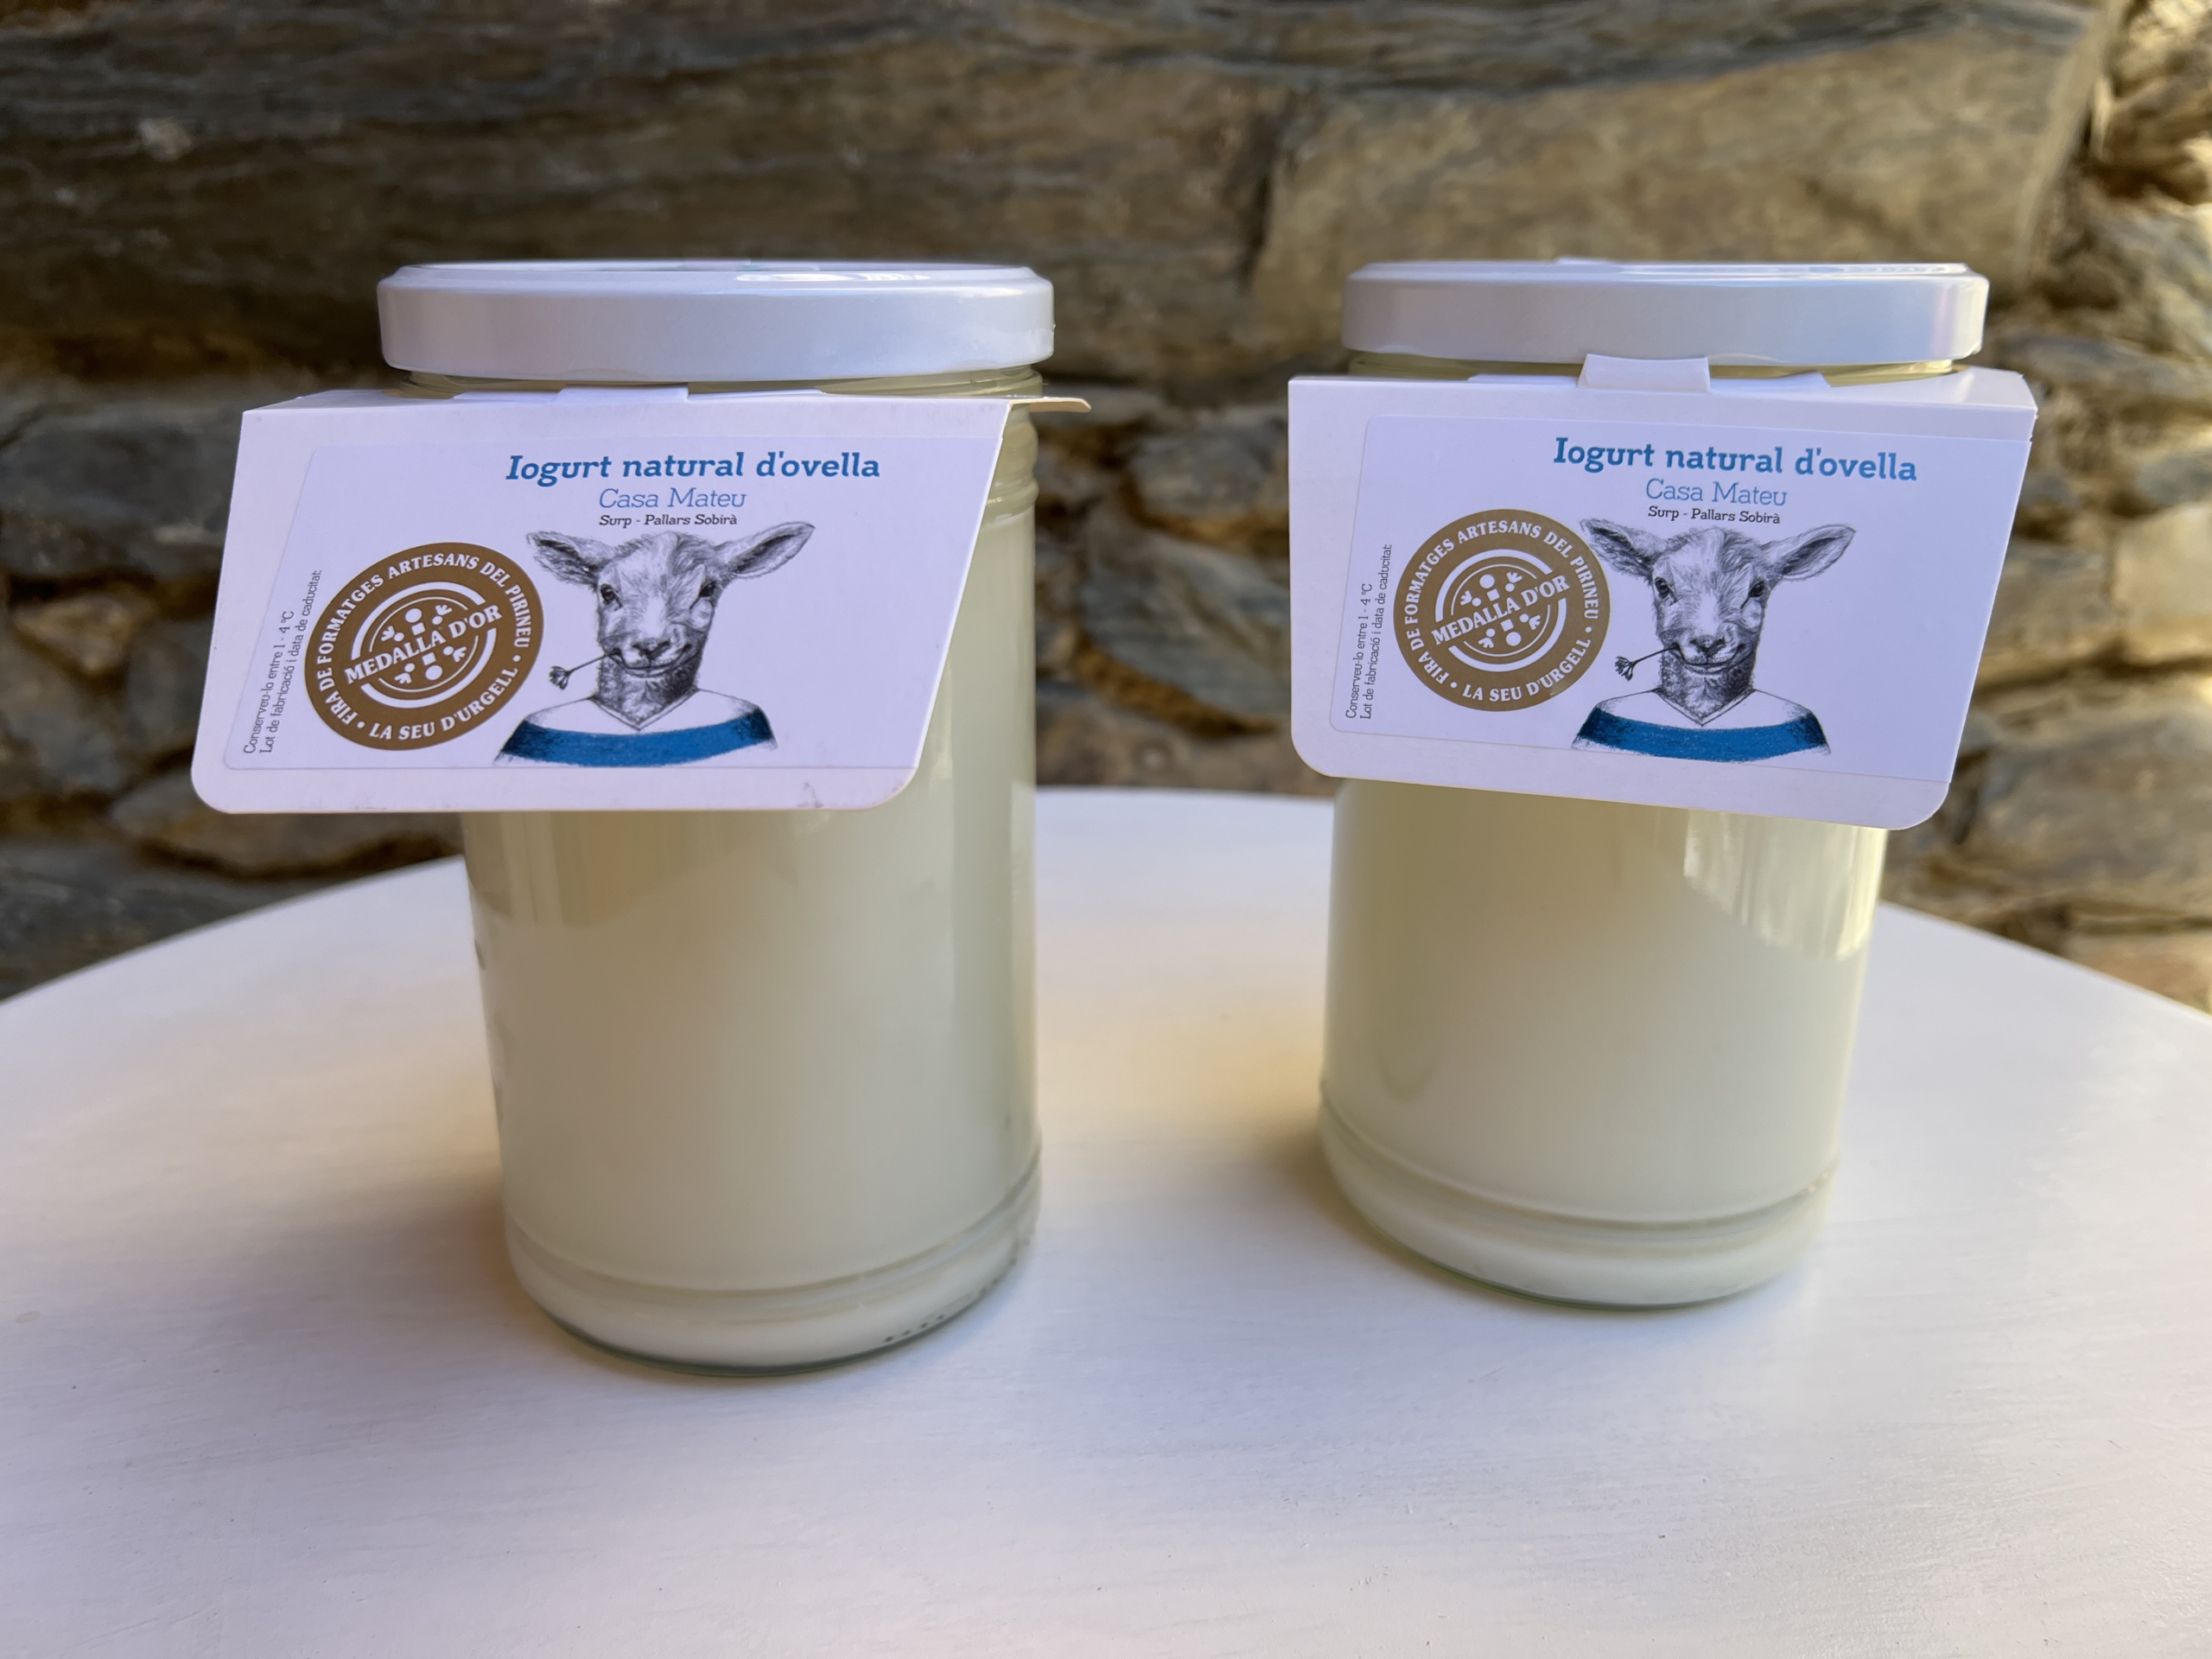 Dos iogurts de Casa Mateu de Surp amb envàs reutilitzable i retornable | ACN